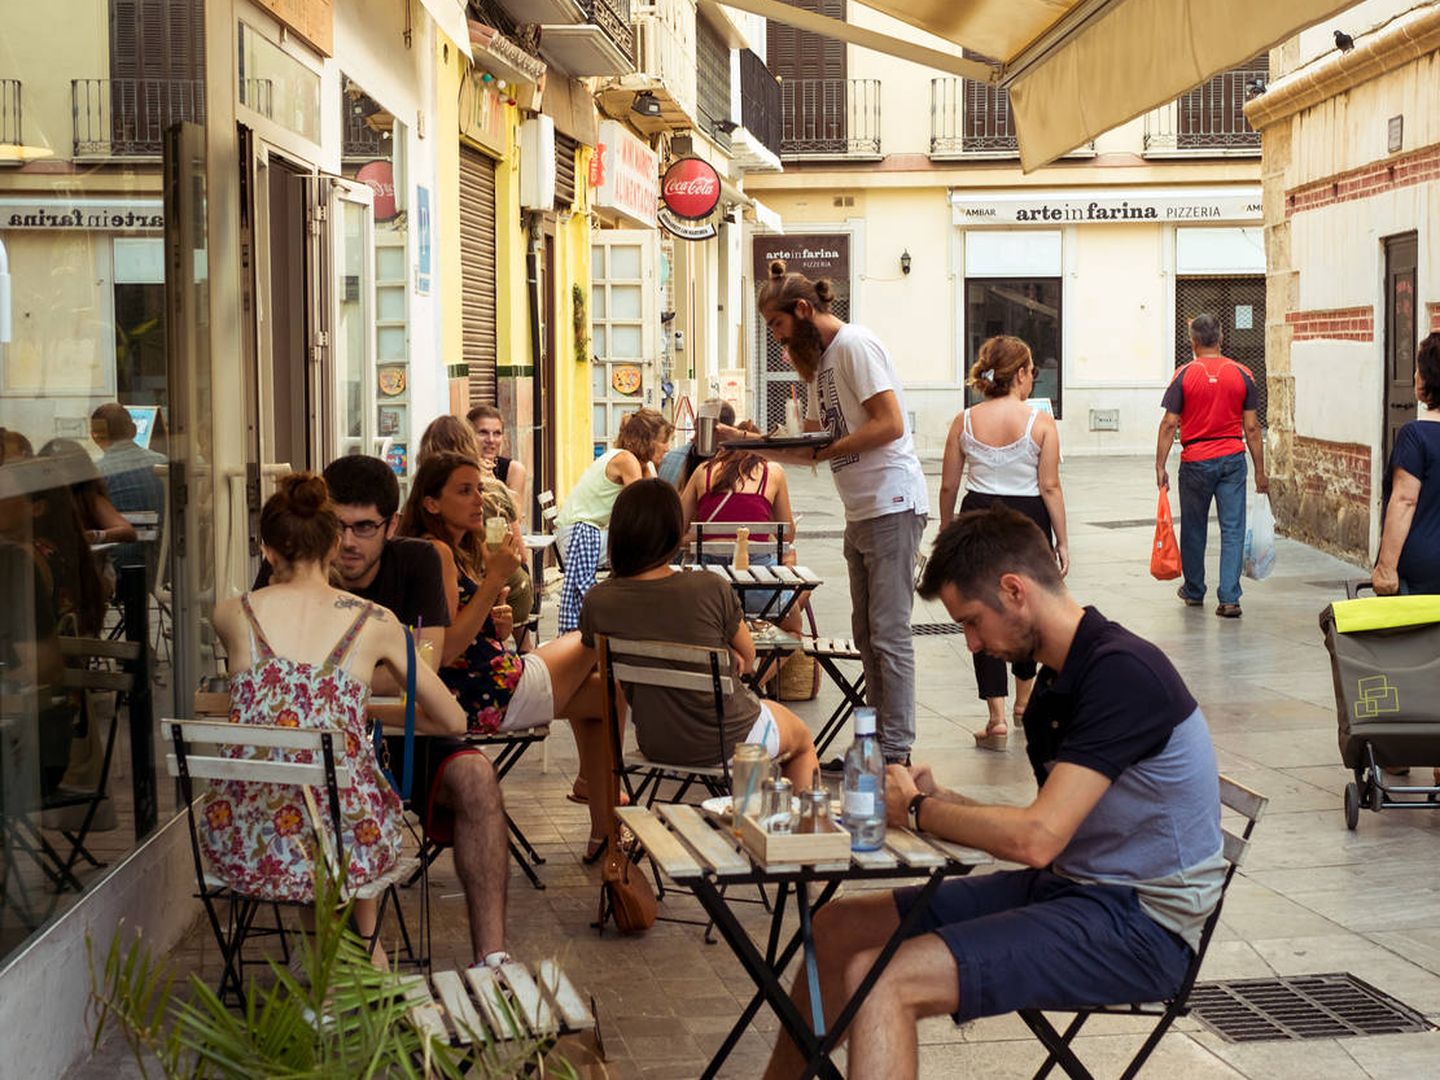 Terraza de un bar en Málaga (iStock)